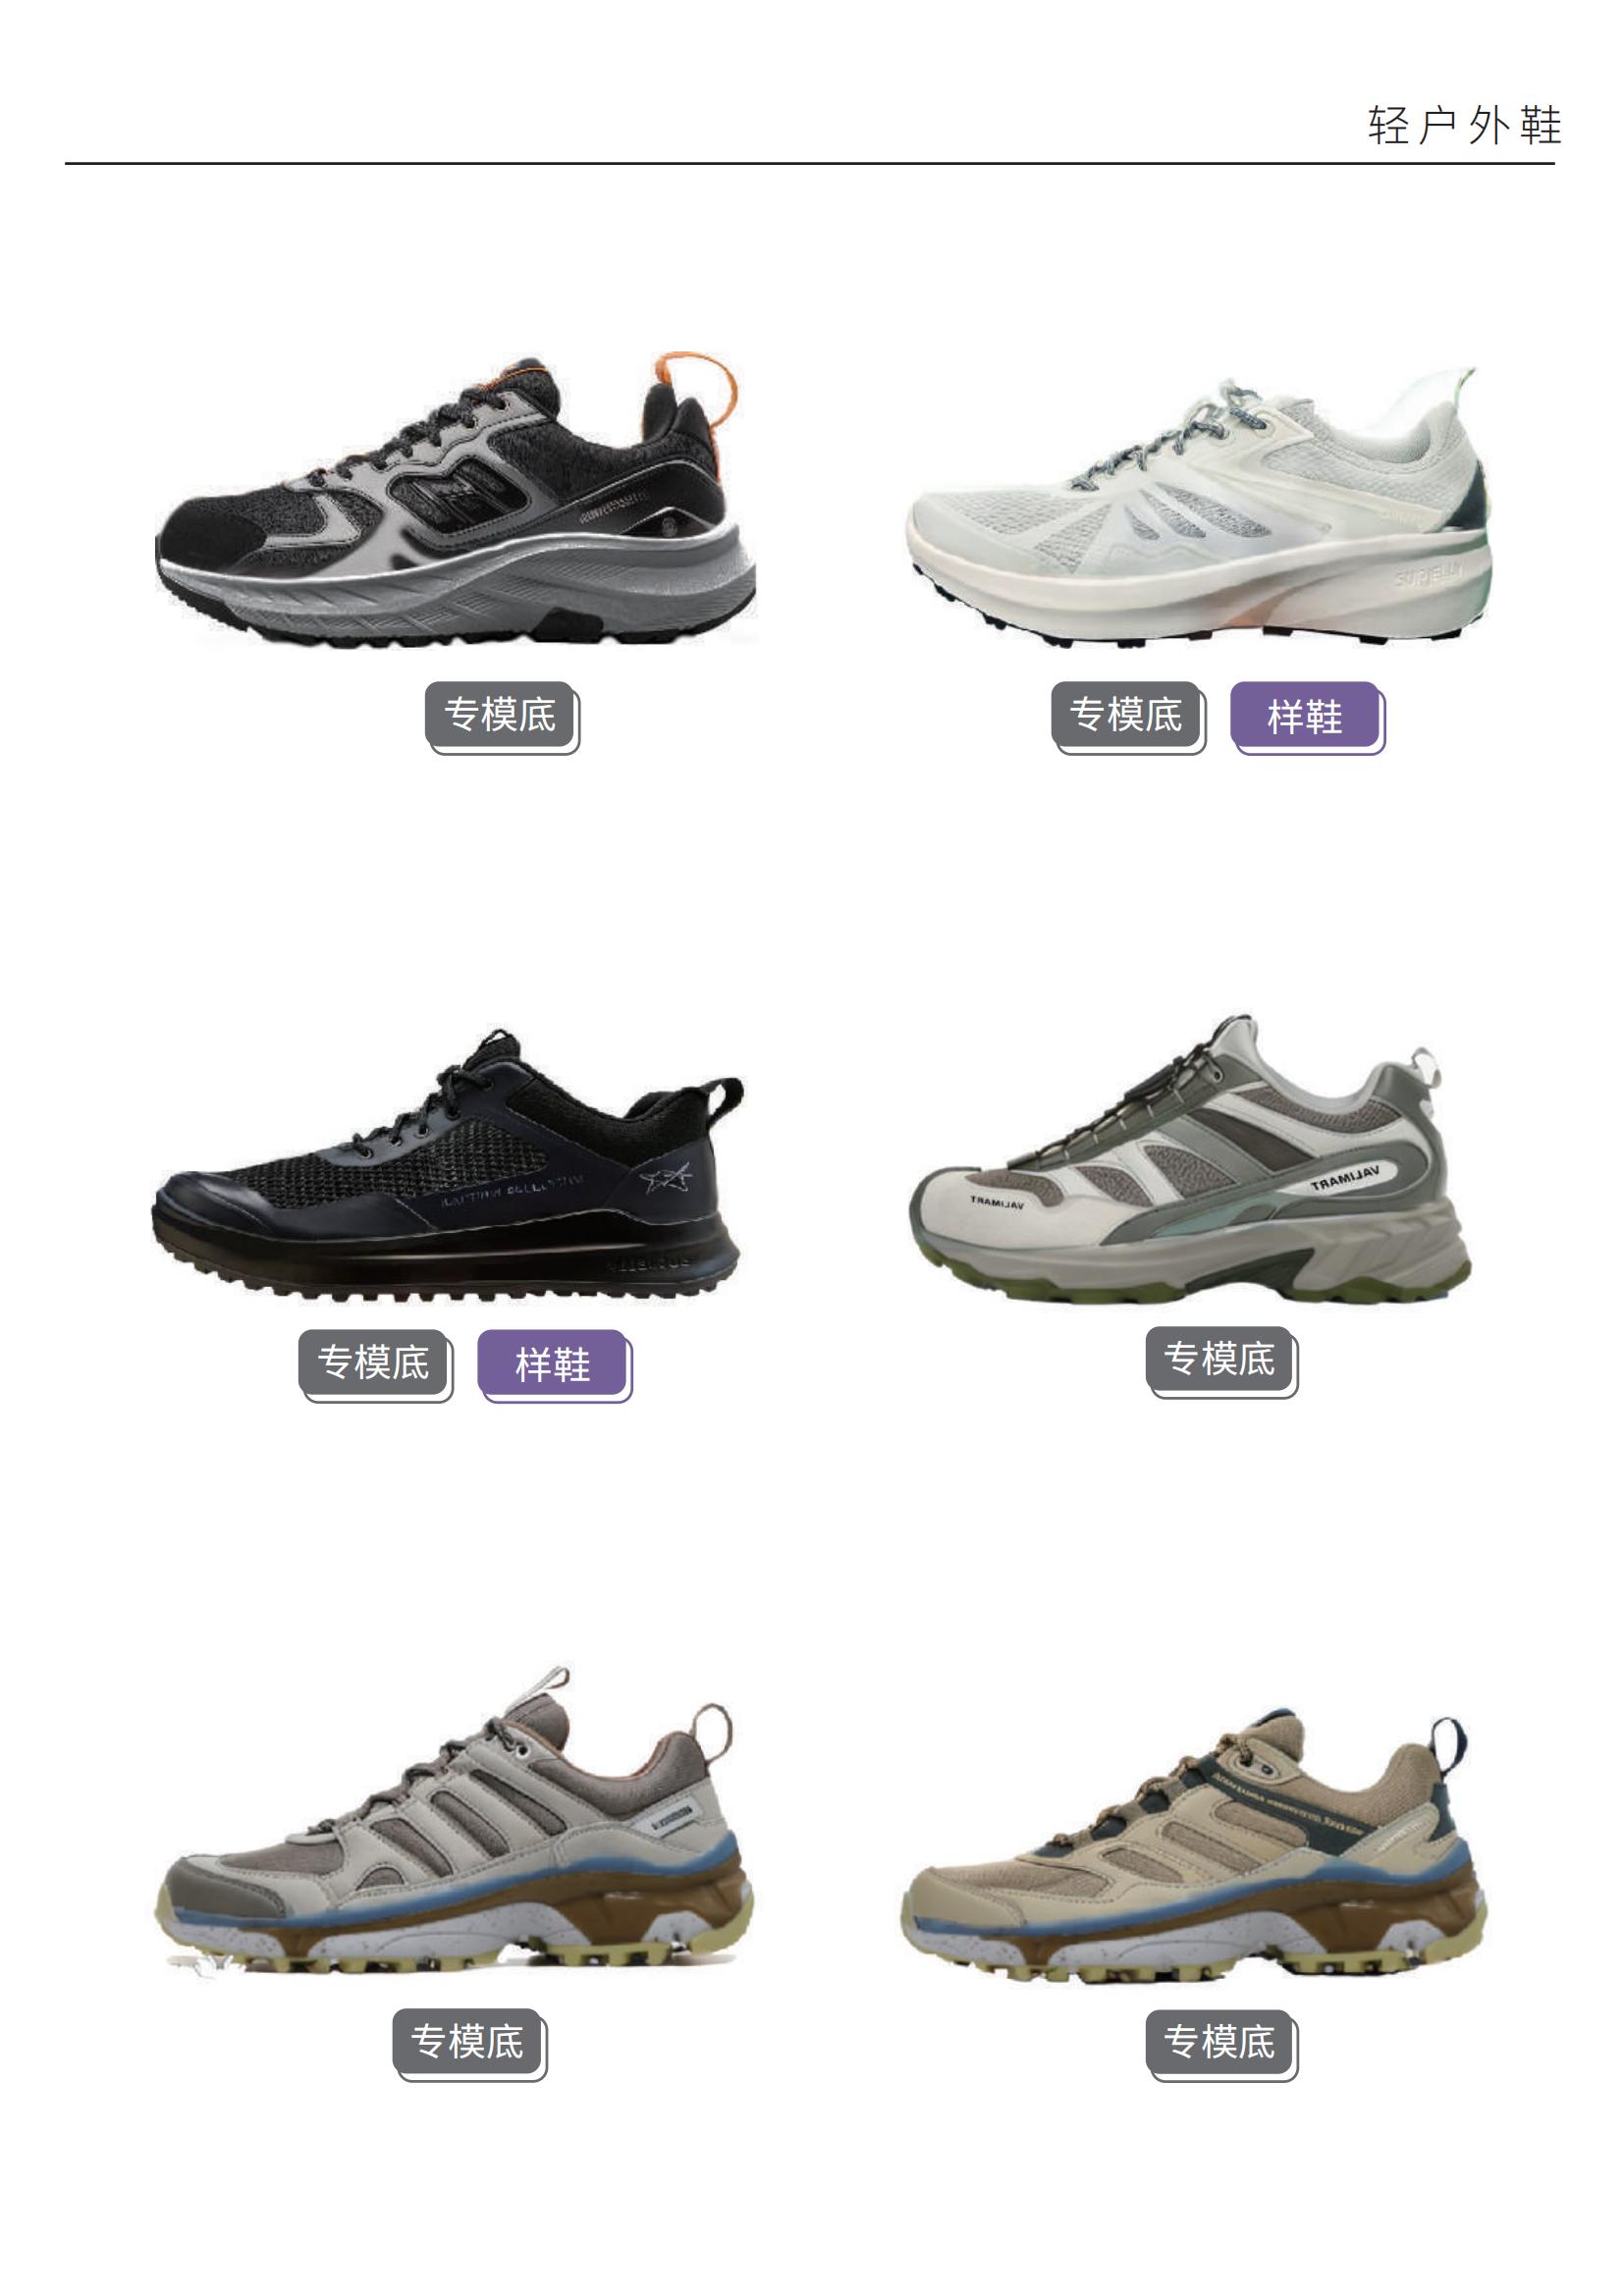 【23年12月刊】惠利玛AI原创设计选品手册 -男鞋